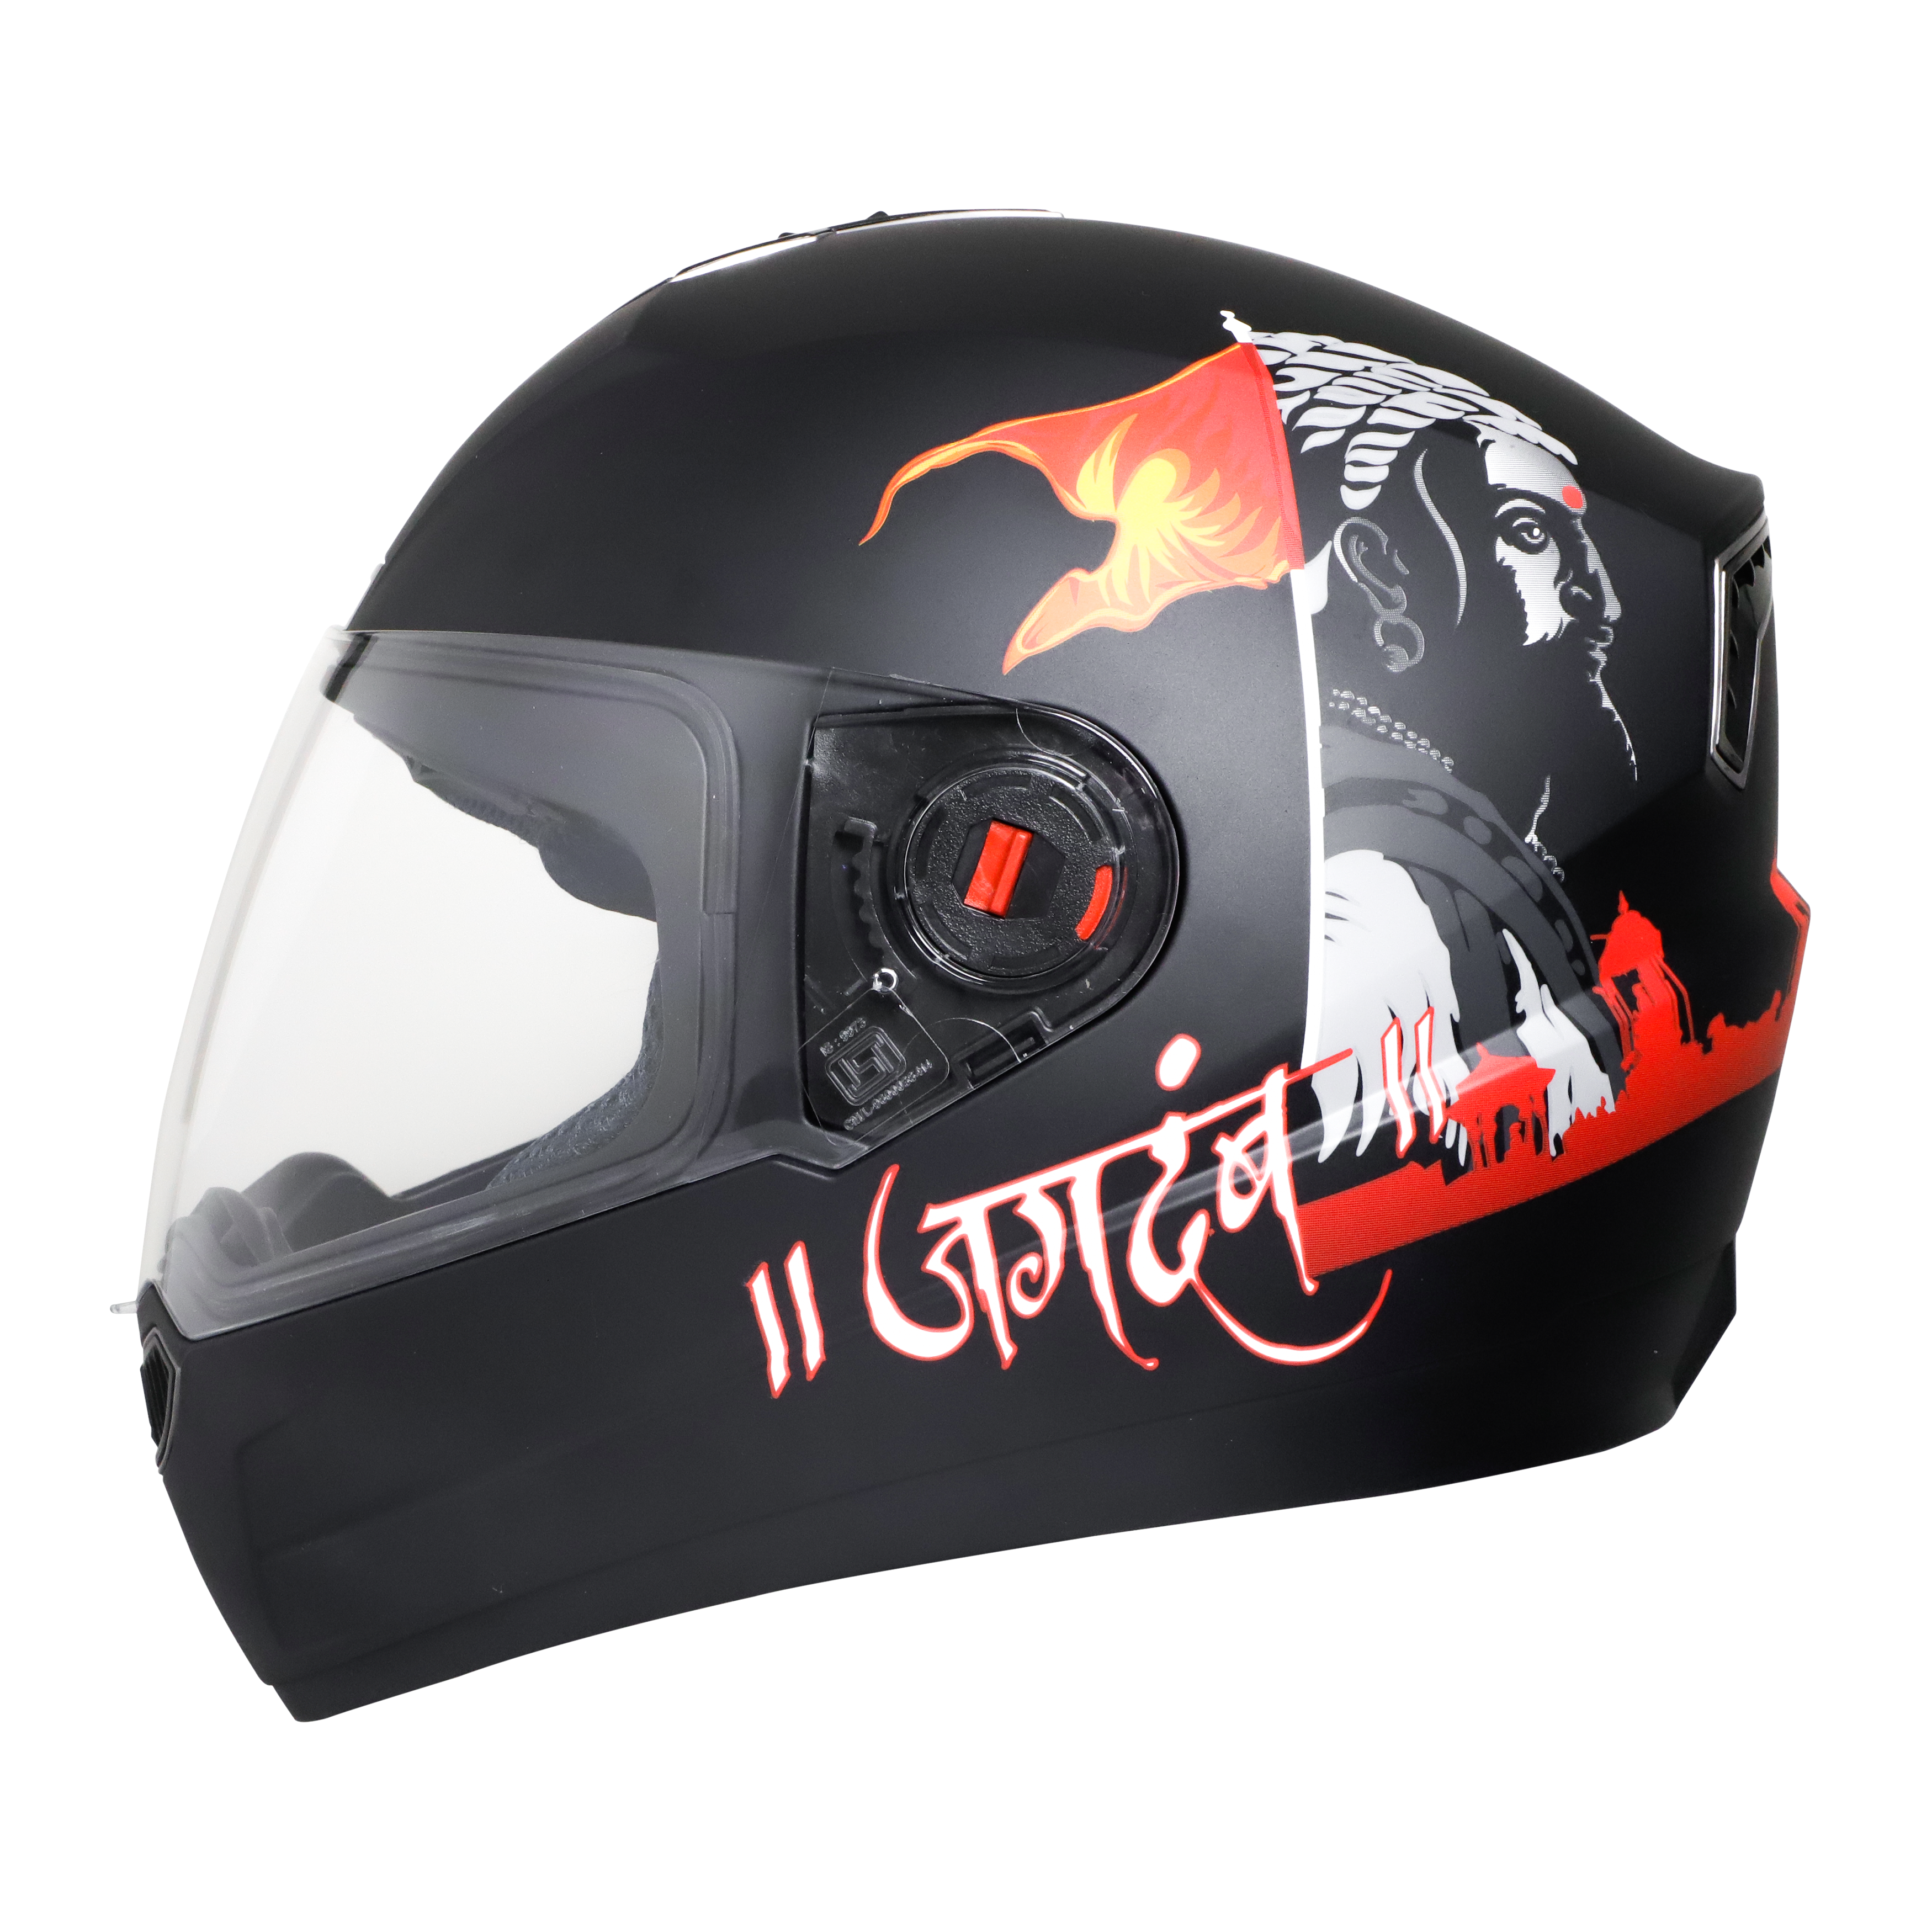 Steelbird SBA-1 Jagdamb Full Face Graphics Helmet, ISI Certified Helmet (Matt Black Grey With Clear Visor)